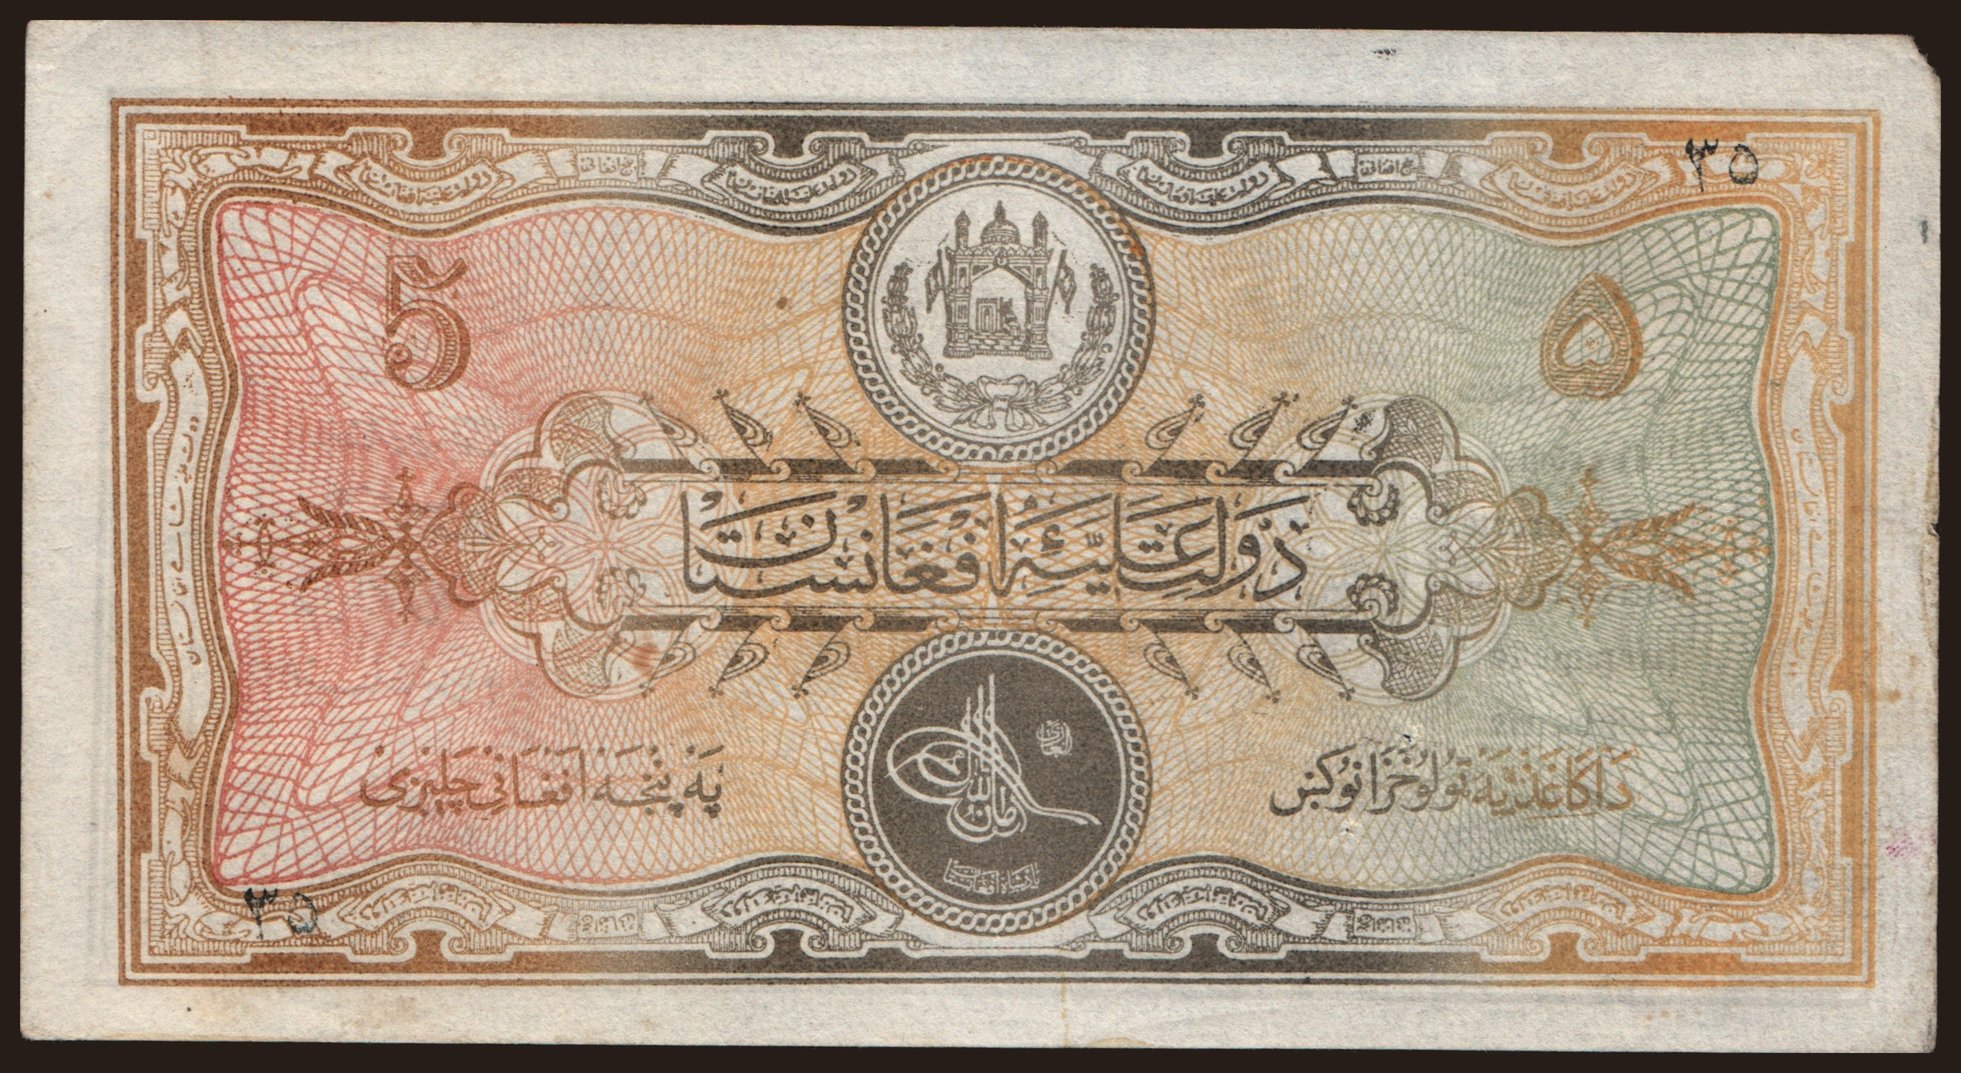 5 afghanis, 1926